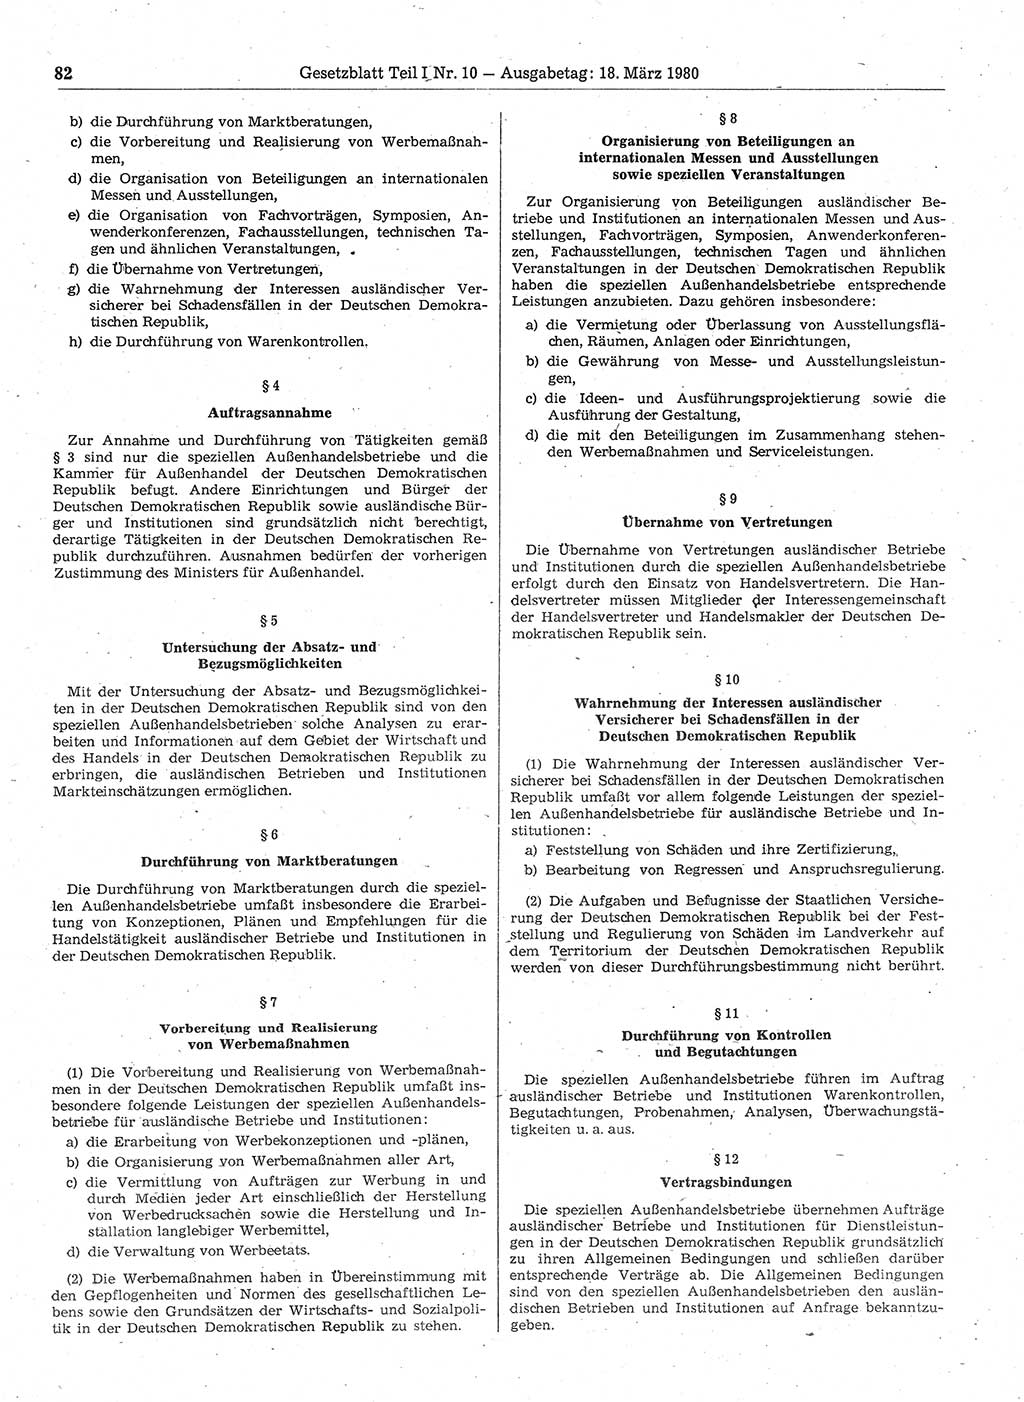 Gesetzblatt (GBl.) der Deutschen Demokratischen Republik (DDR) Teil Ⅰ 1980, Seite 82 (GBl. DDR Ⅰ 1980, S. 82)